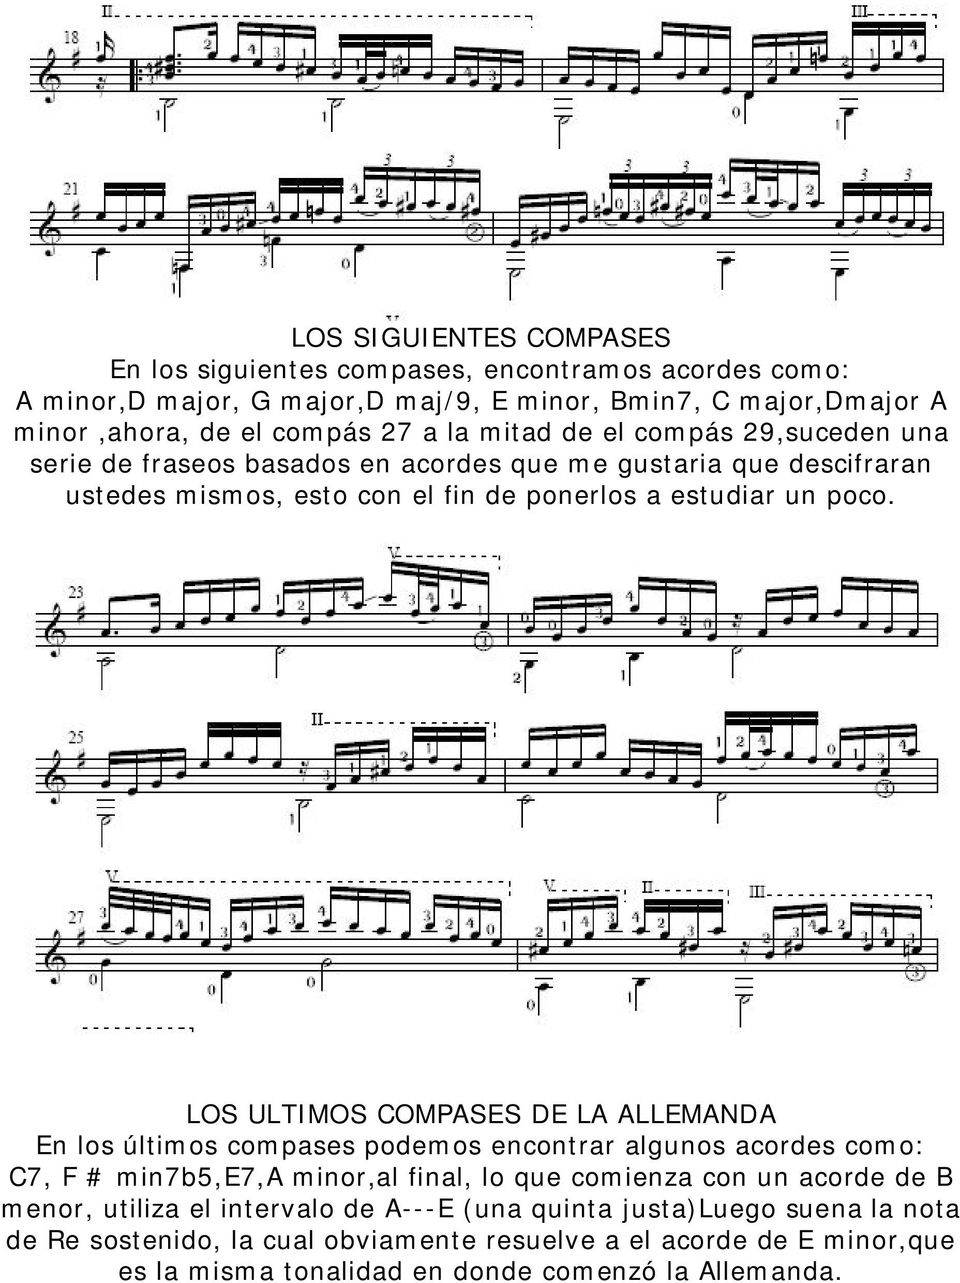 LOS ULTIMOS COMPASES DE LA ALLEMANDA En los últimos compases podemos encontrar algunos acordes como: C7, F # min7b5,e7,a minor,al final, lo que comienza con un acorde de B menor,